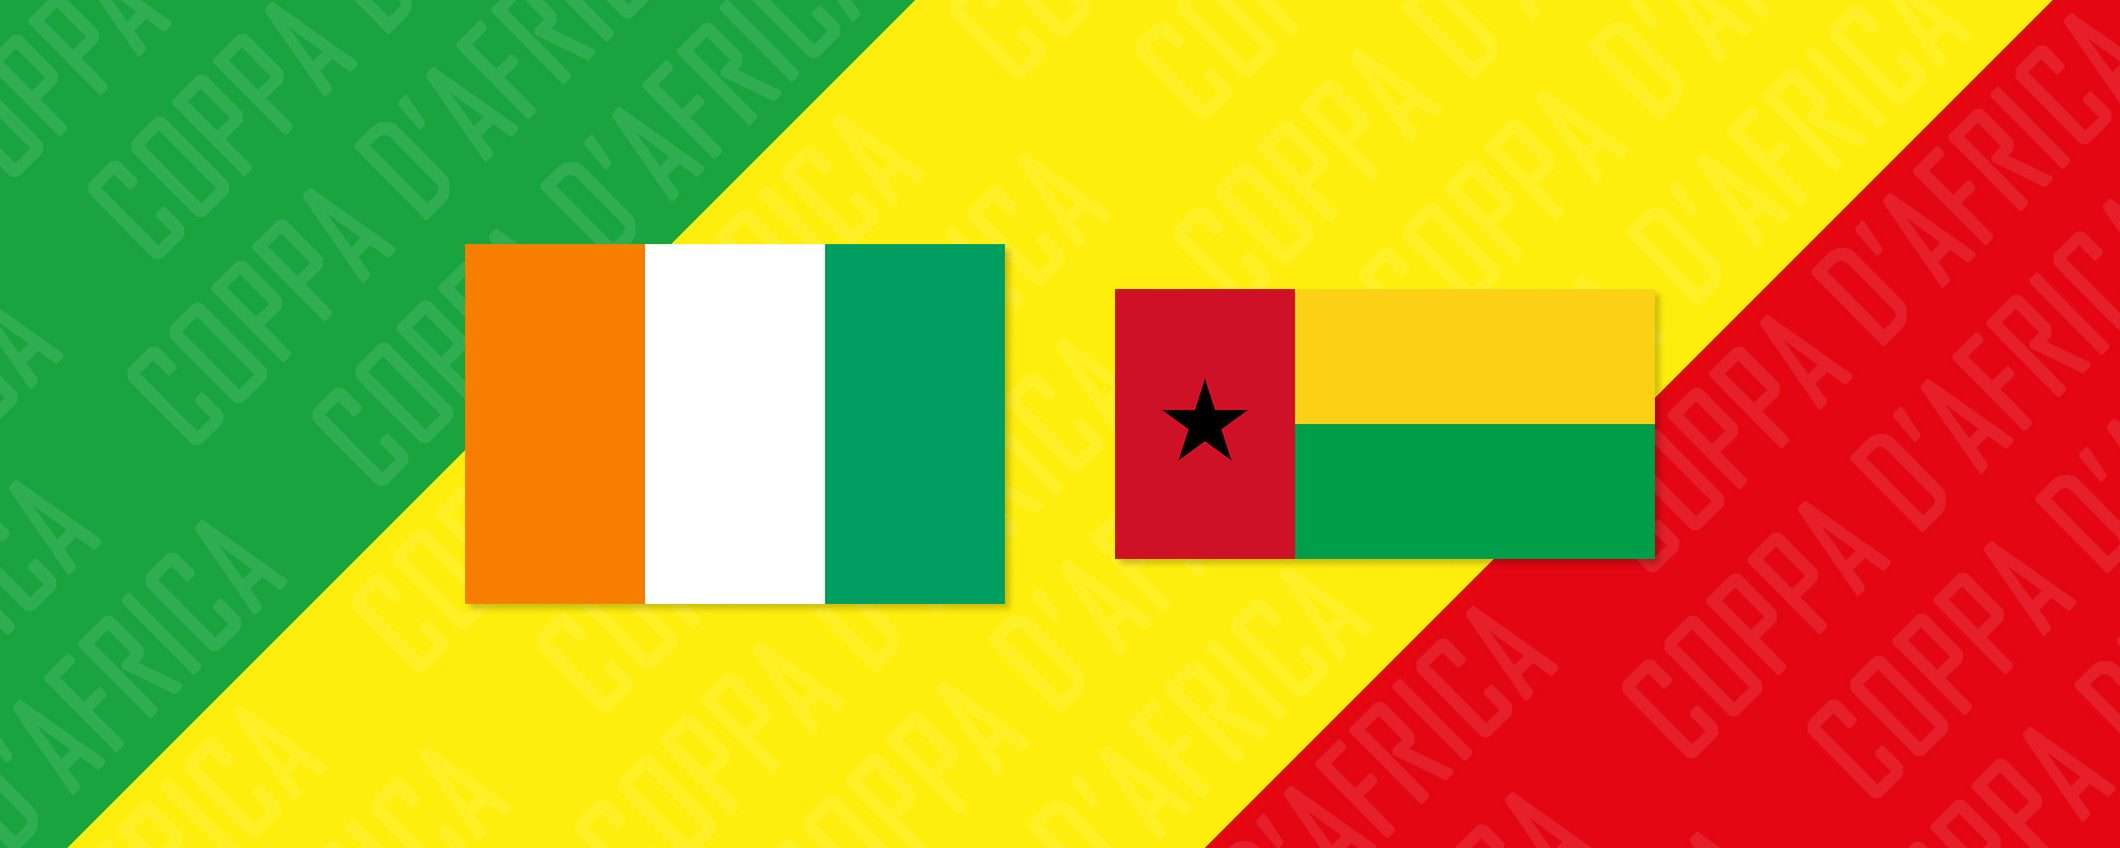 Costa d'Avorio-Guinea Bissau: come vederla in streaming dall'estero